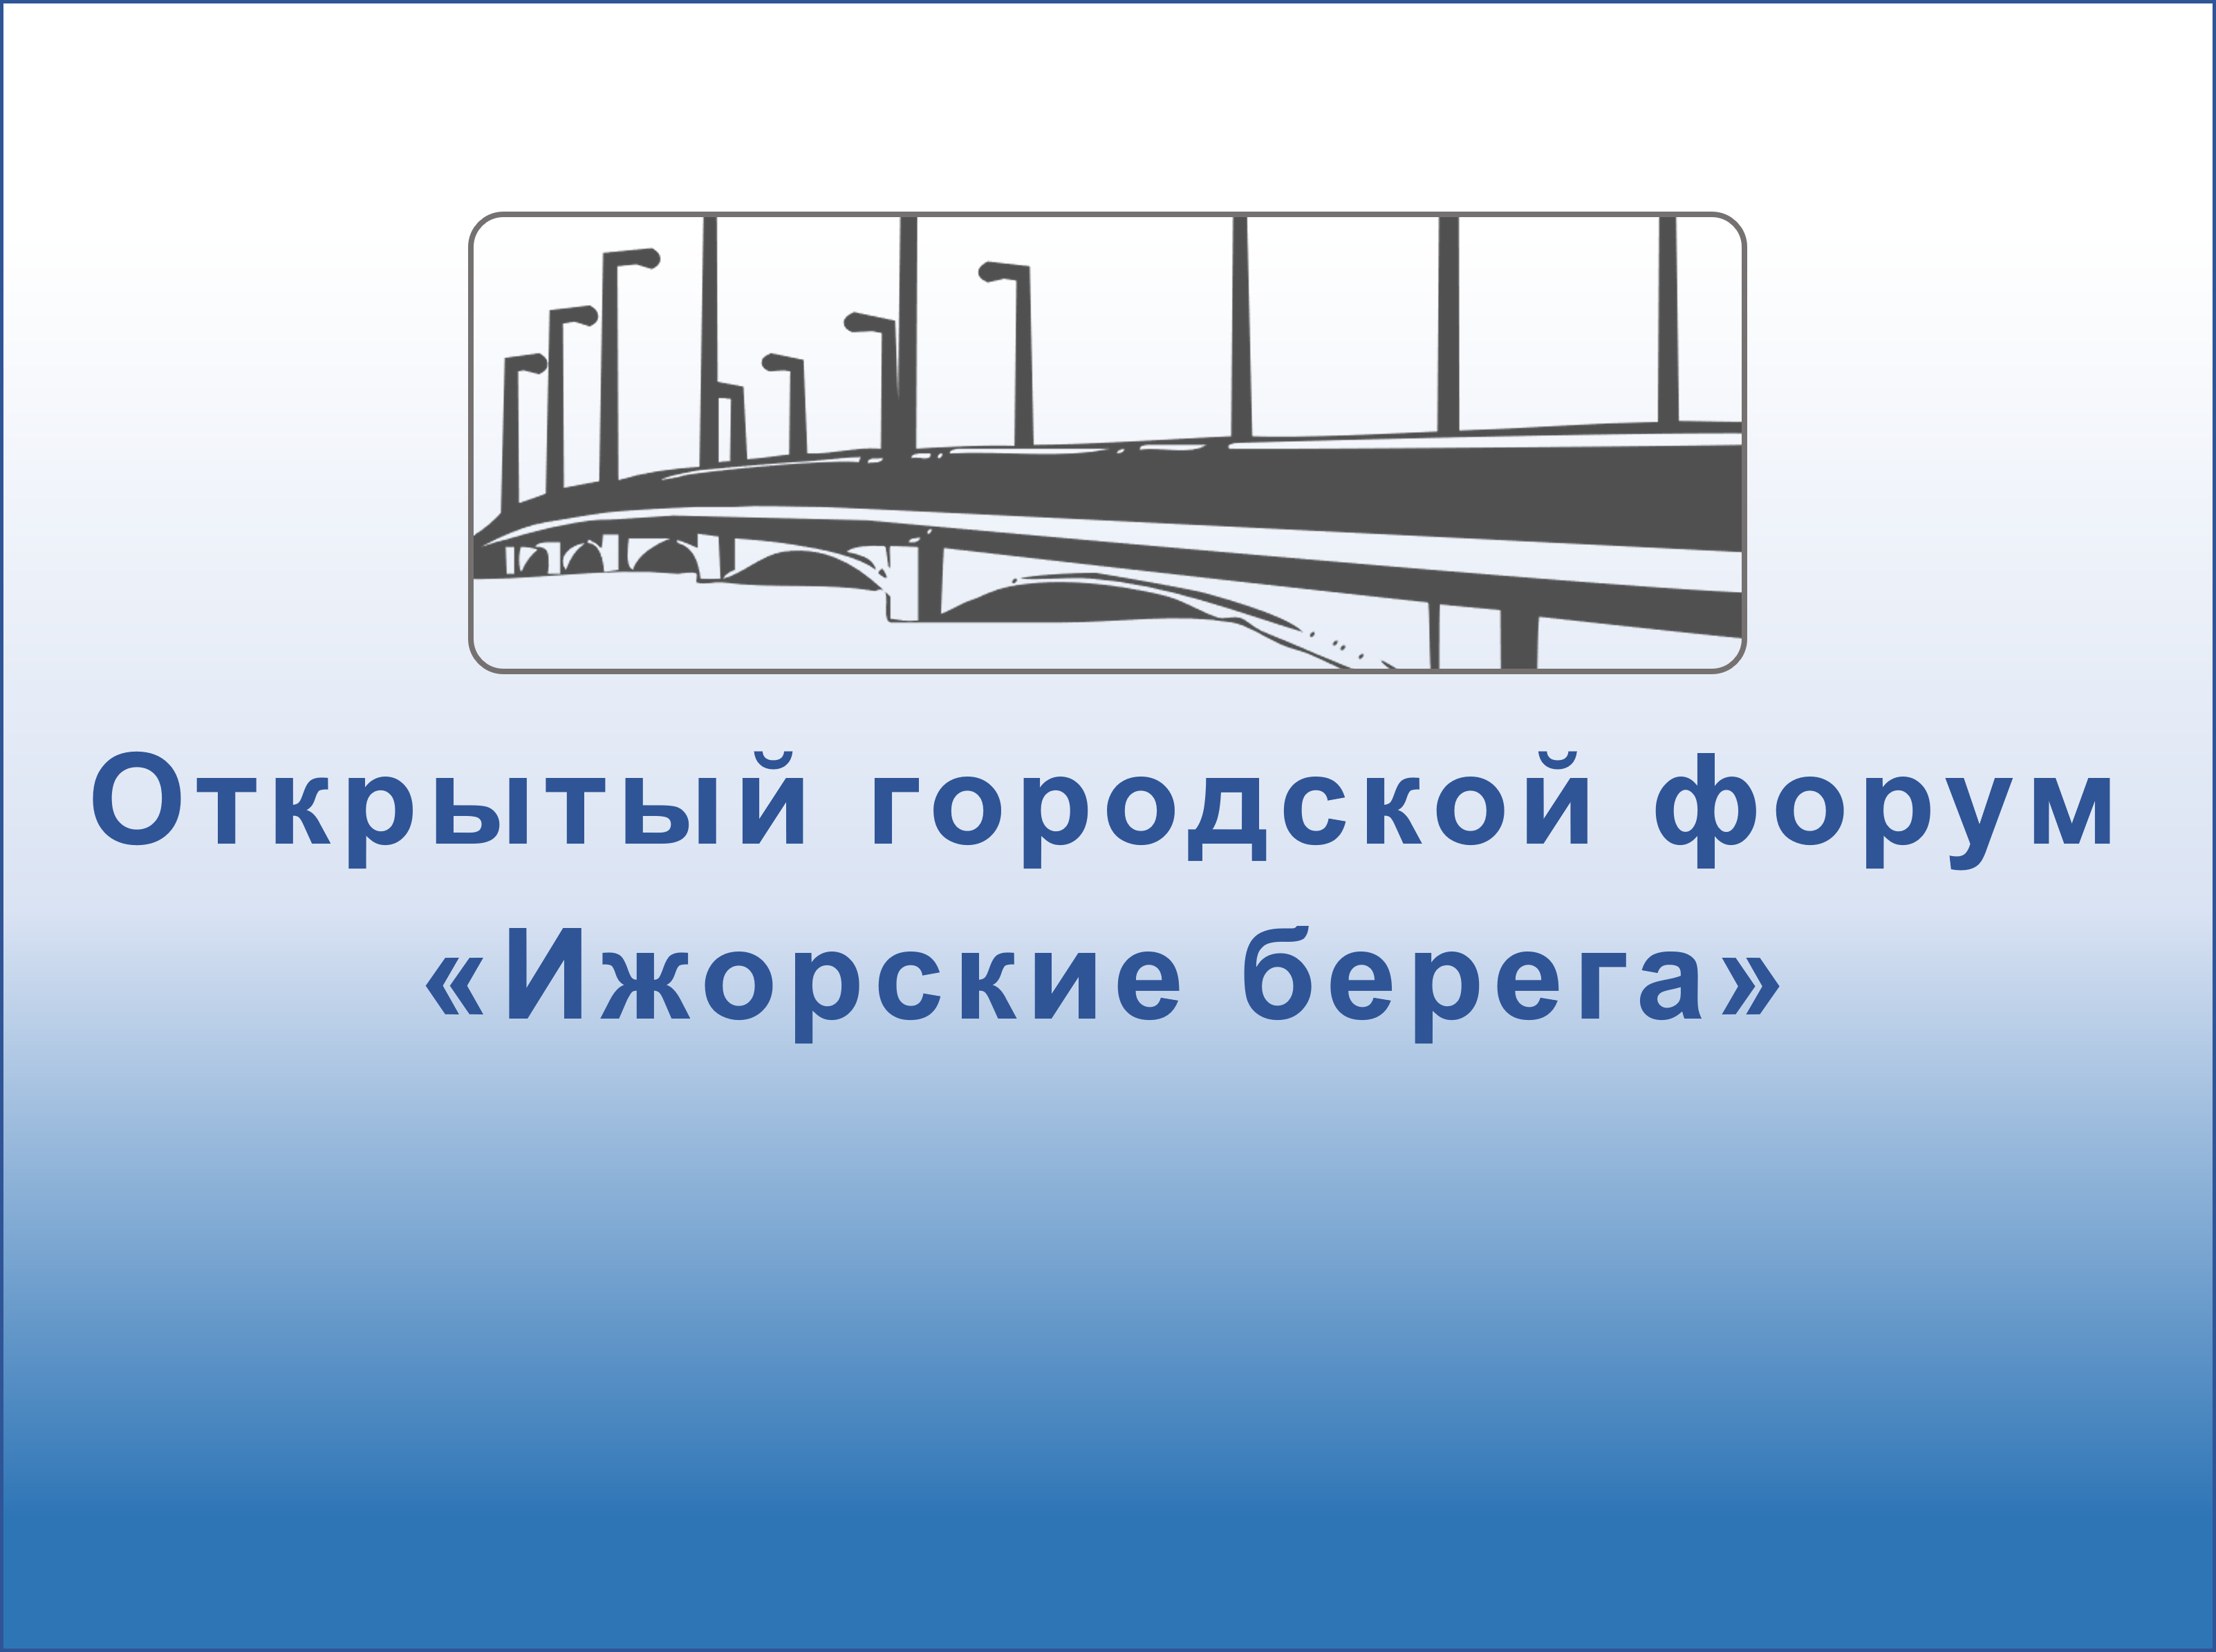 Корректировка порядка дистанционной защиты конкурсных работ открытого городского форума «Ижорские берега»